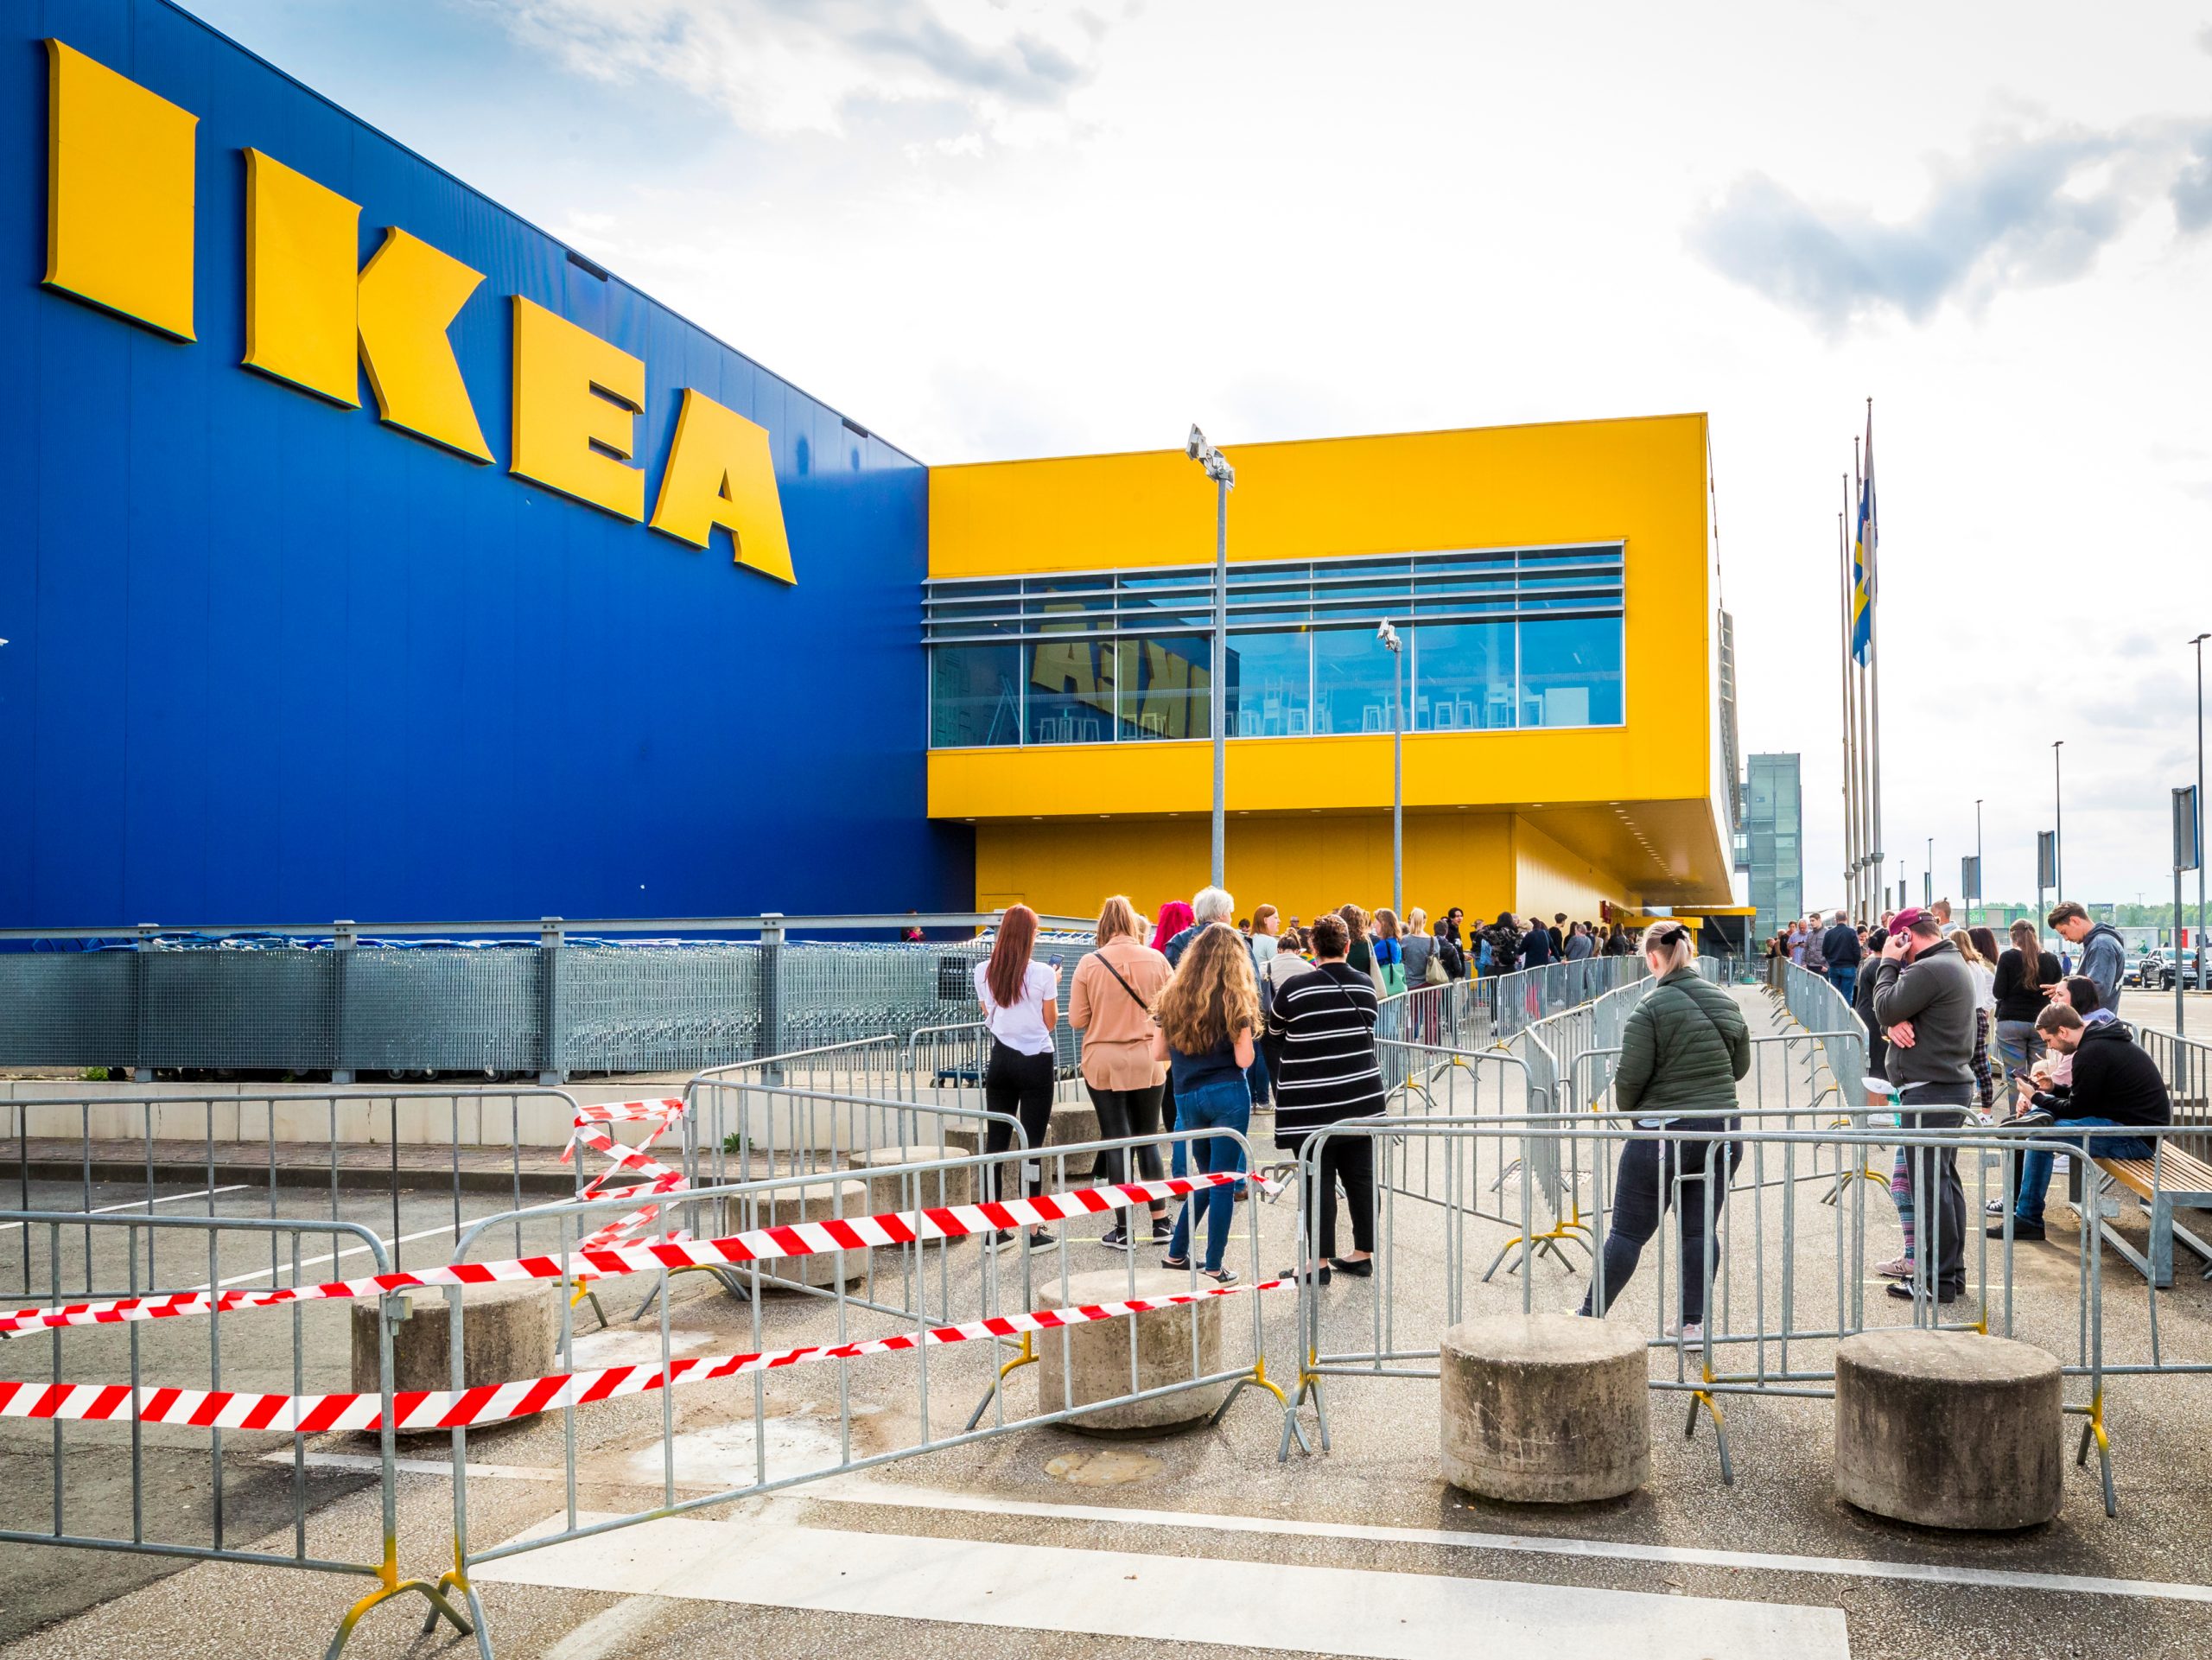 Klanten staan in de rij voor IKEA. De woonwinkelreus opent de deuren van zijn Nederlandse winkels weer.